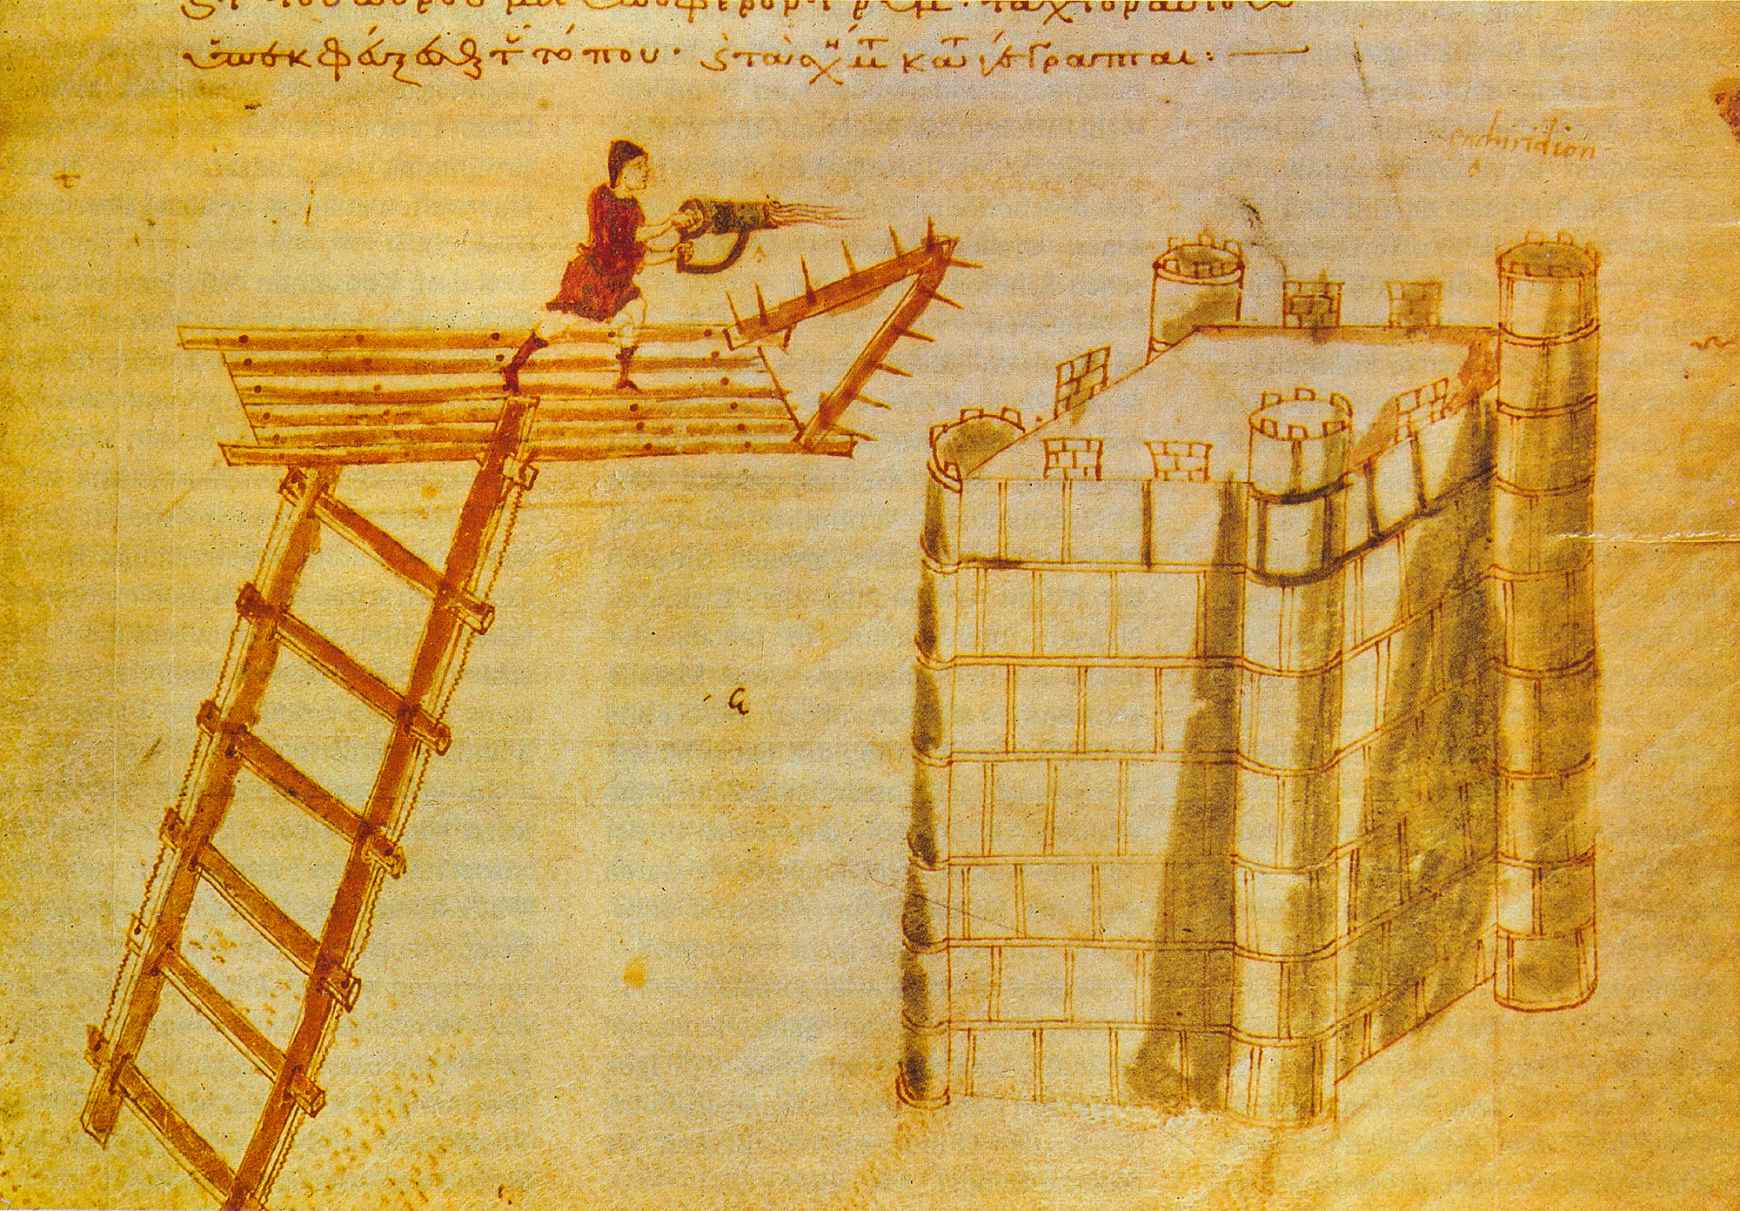 Выкарыстанне cheirosiphōn ("ручны siphōn"), партатыўнага агнямёта, які выкарыстоўваецца з вяршыні лётнага моста супраць замка. Ілюмінацыя з паліарцэтыкі Героя Візантыі.